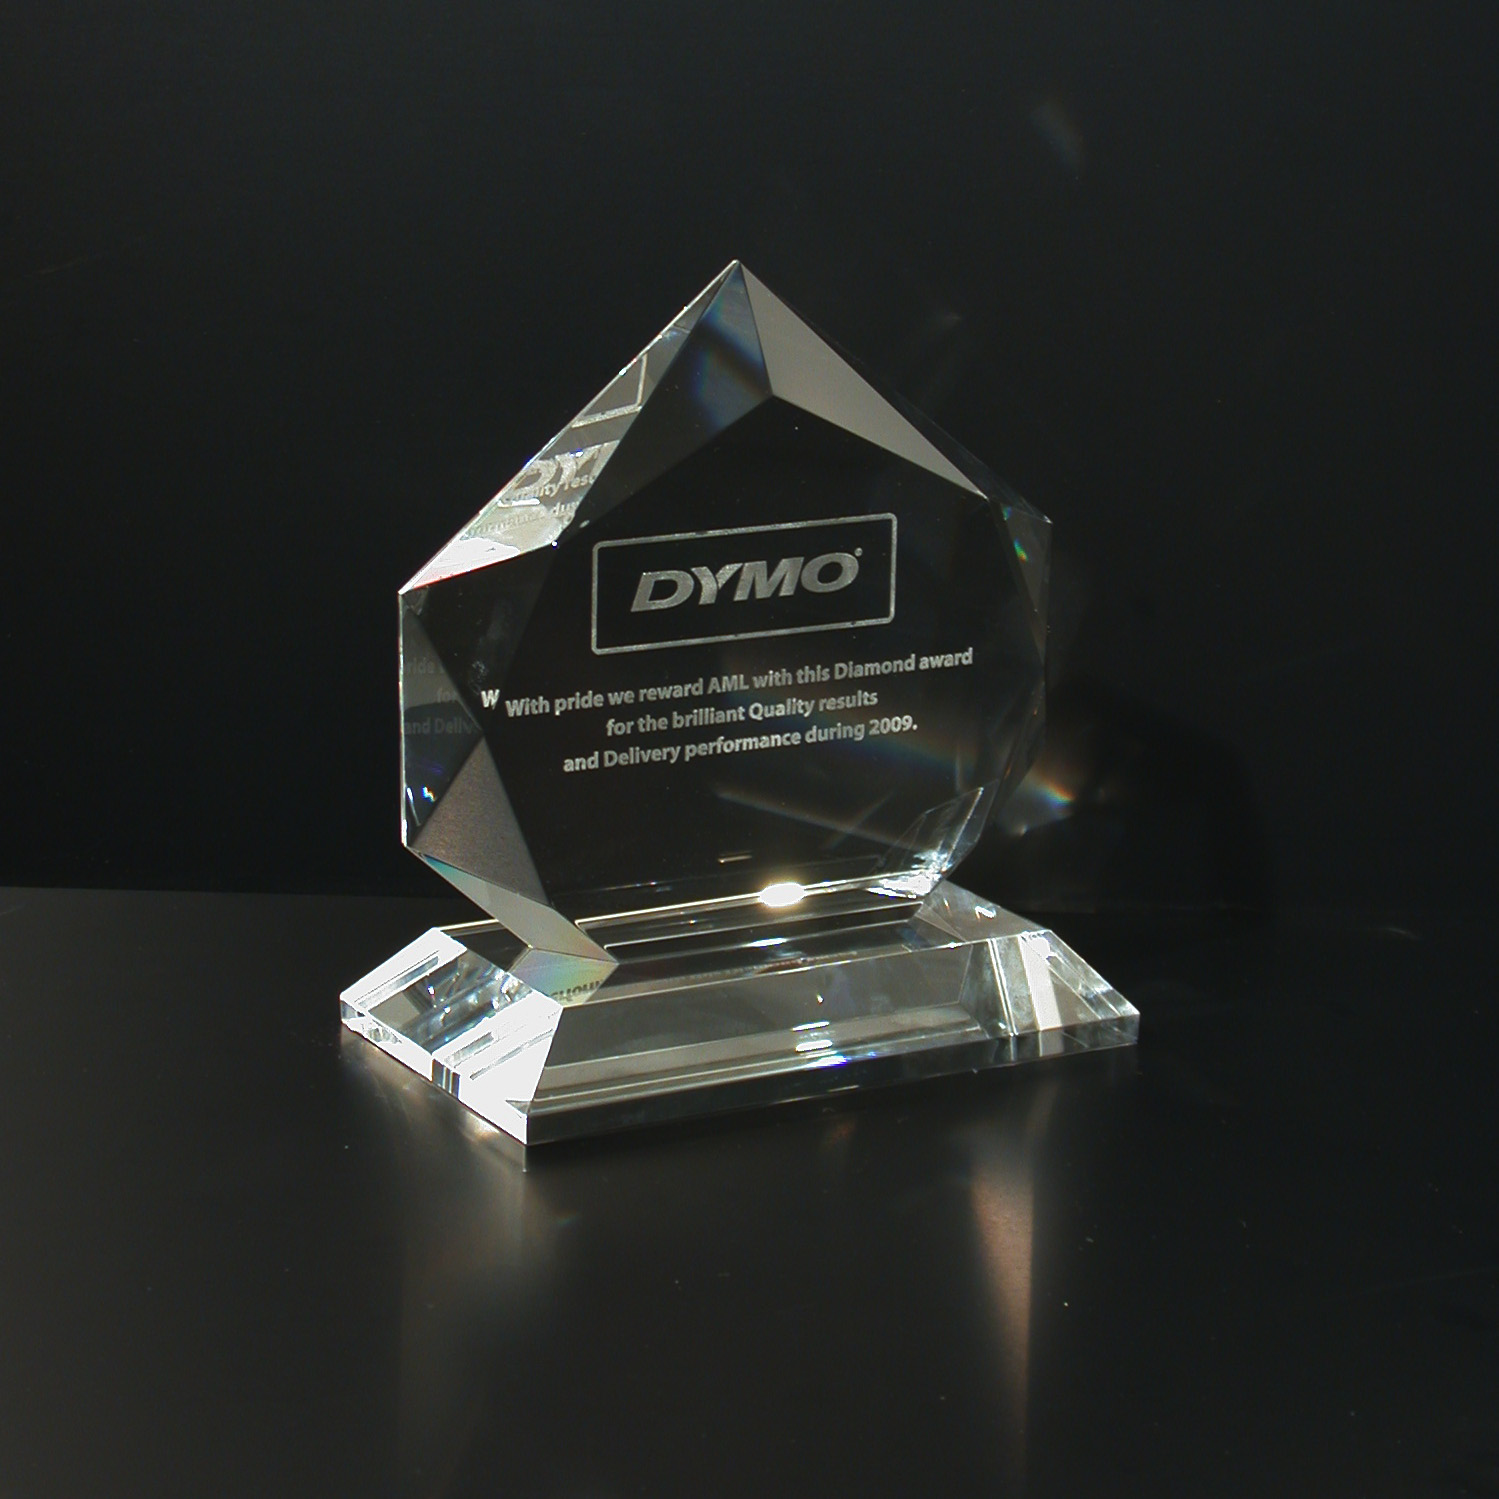 prestige-diamond-c831-03-01-01-kristallen-awards-c831.jpg